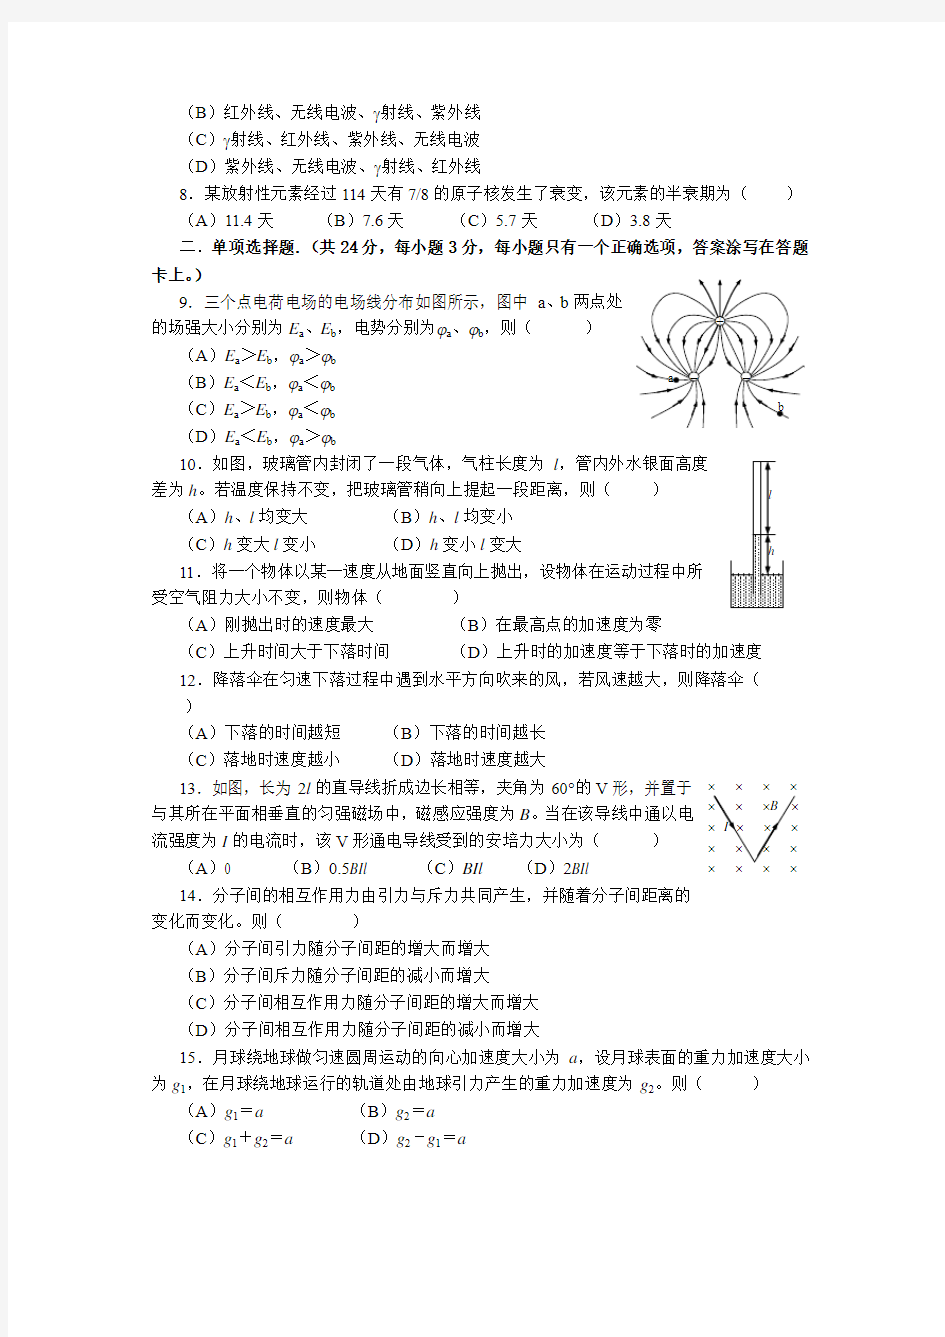 2005年上海高考试卷